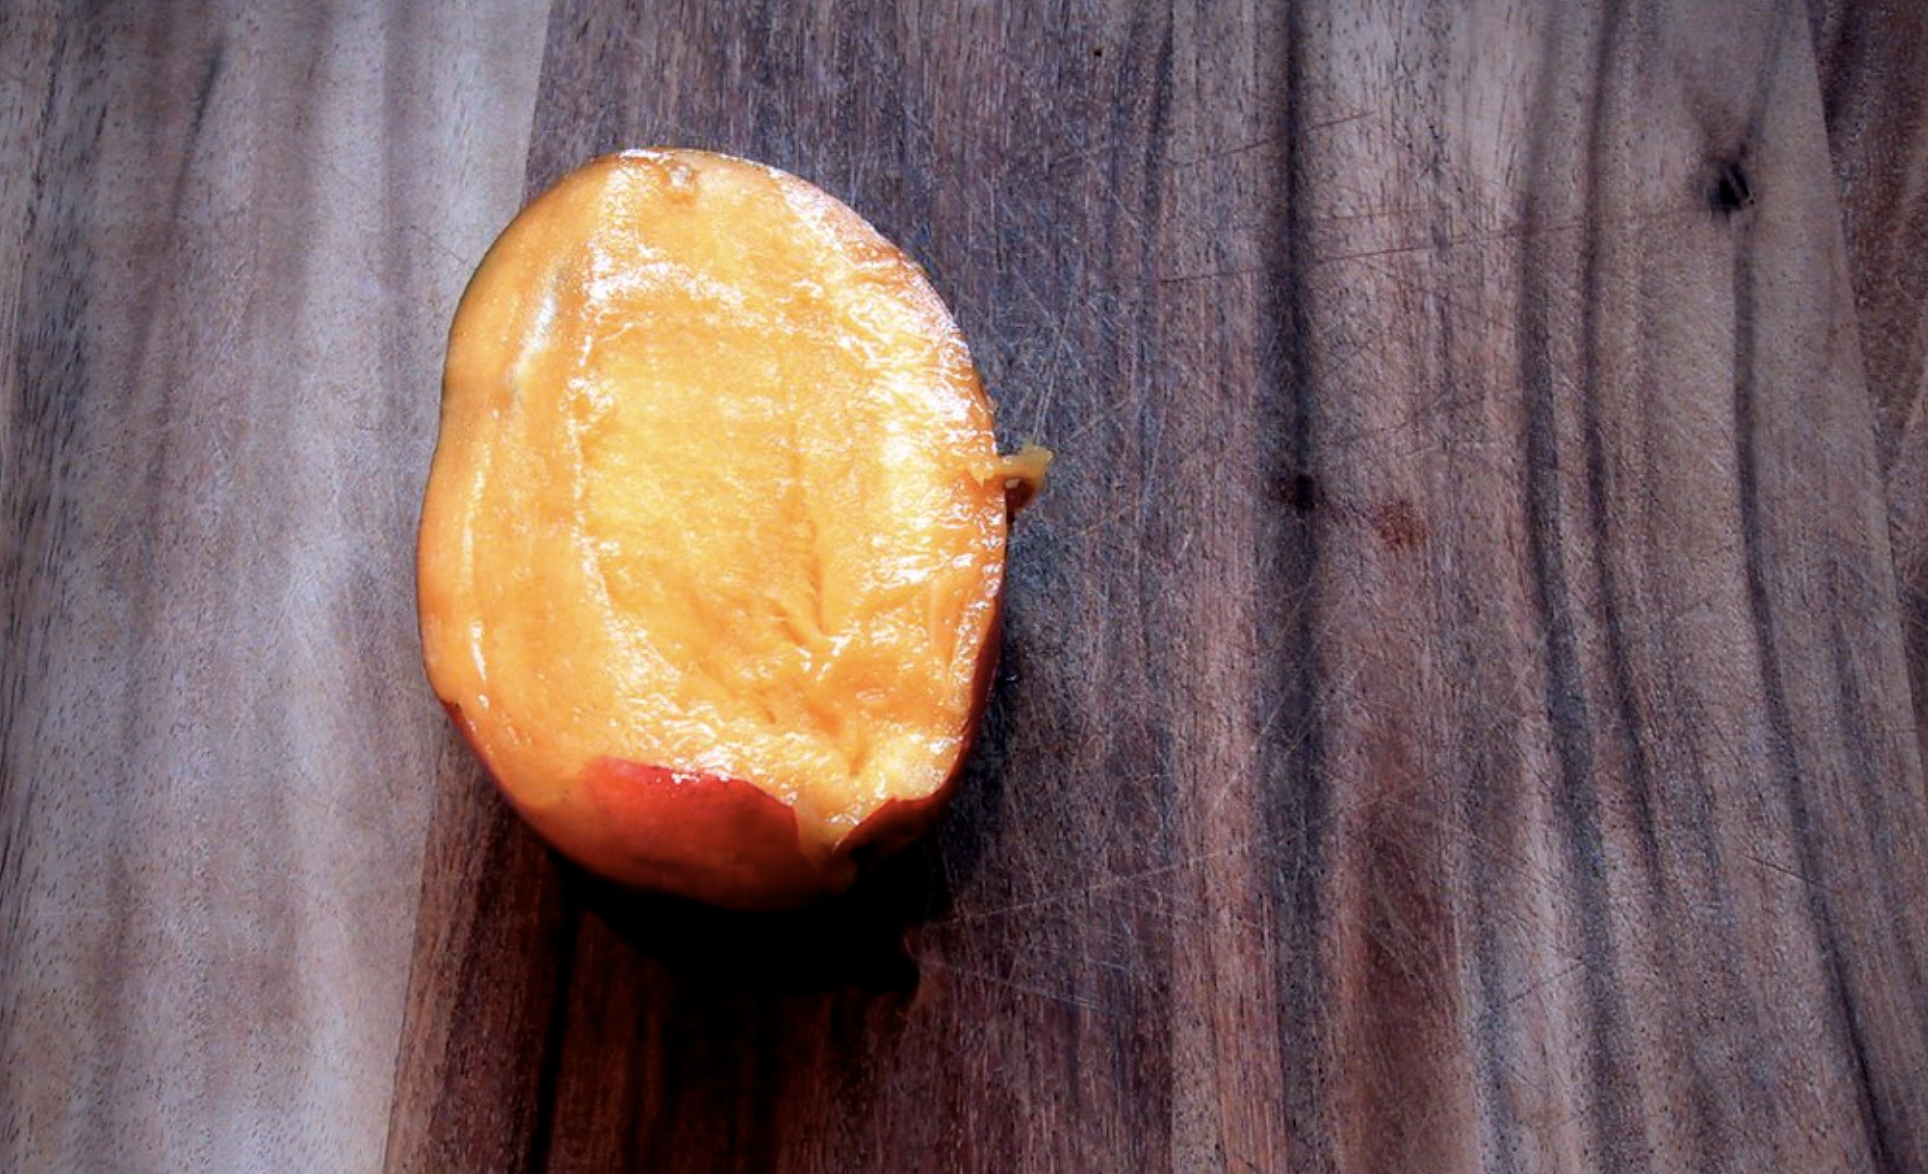 Una pieza de mango, en una imagen de Kat Coyle en Flickr.com